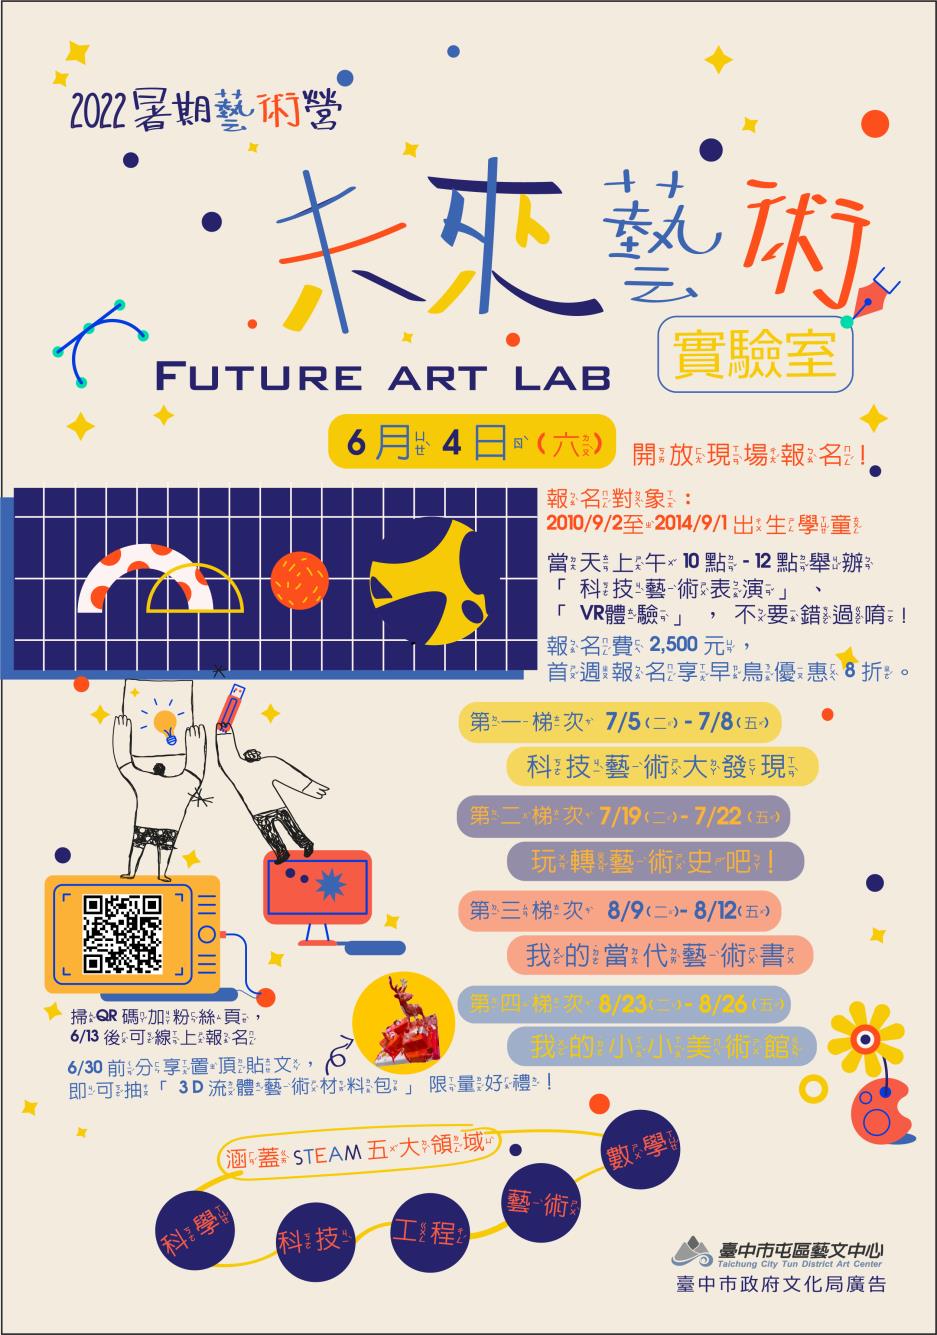 【2022暑期藝術營-未來藝術實驗室】將於6/4(六)開放現場報名！